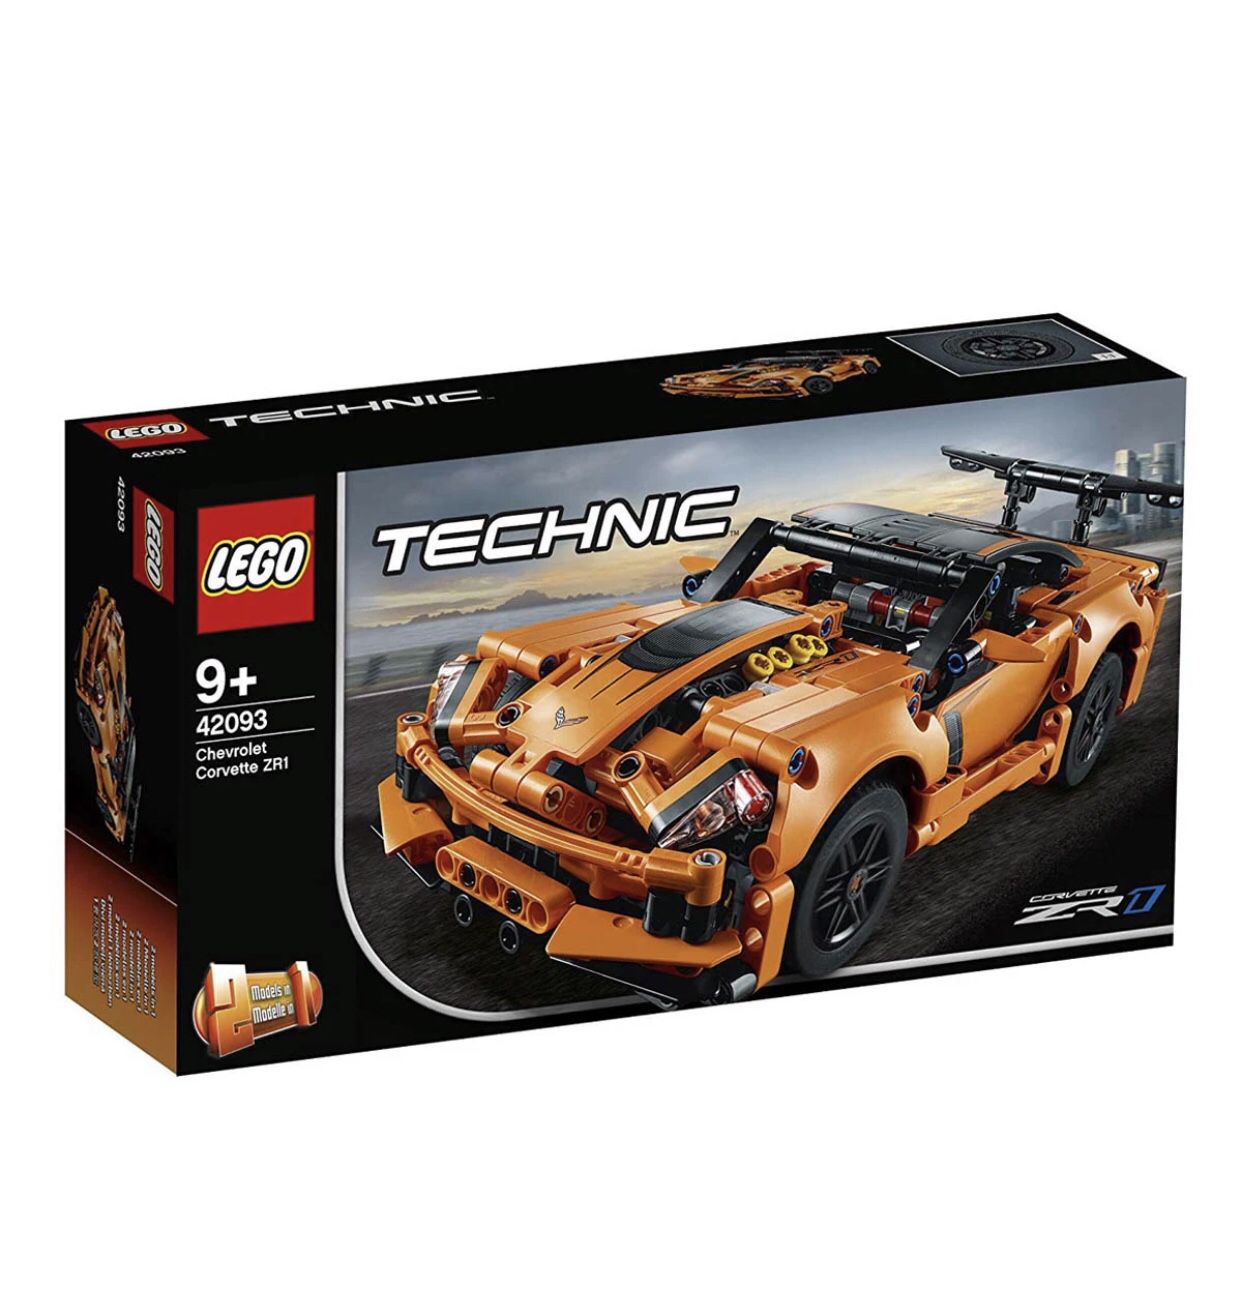 LEGO Technic Chevrolet Corvette ZR1 Building Kit 42093